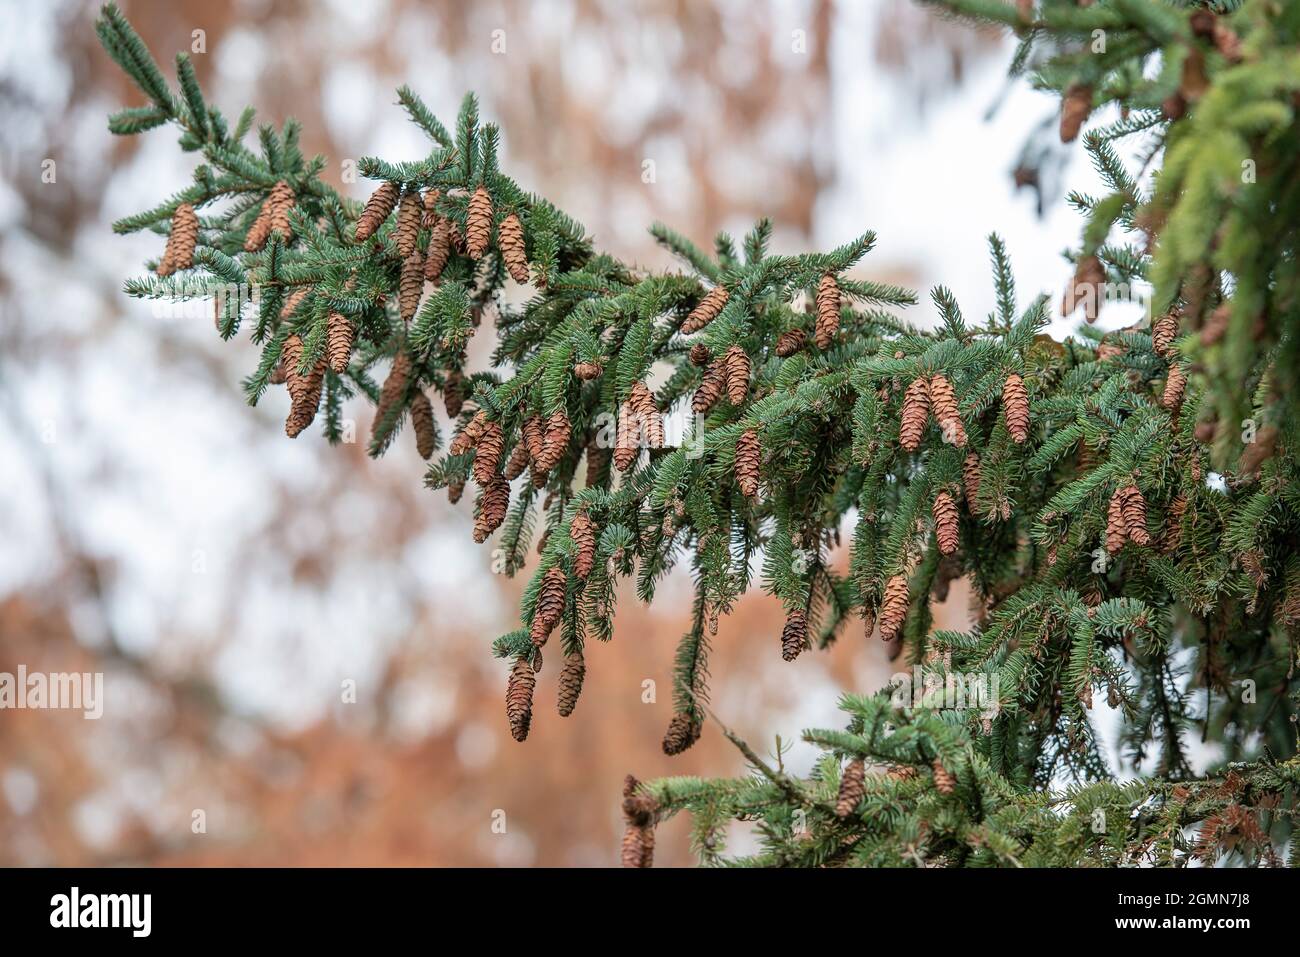 Épinette de chat, épinette de skunk, épinette blanche, épinette d'Alberta naine (Picea glauca), cônes sur une branche Banque D'Images